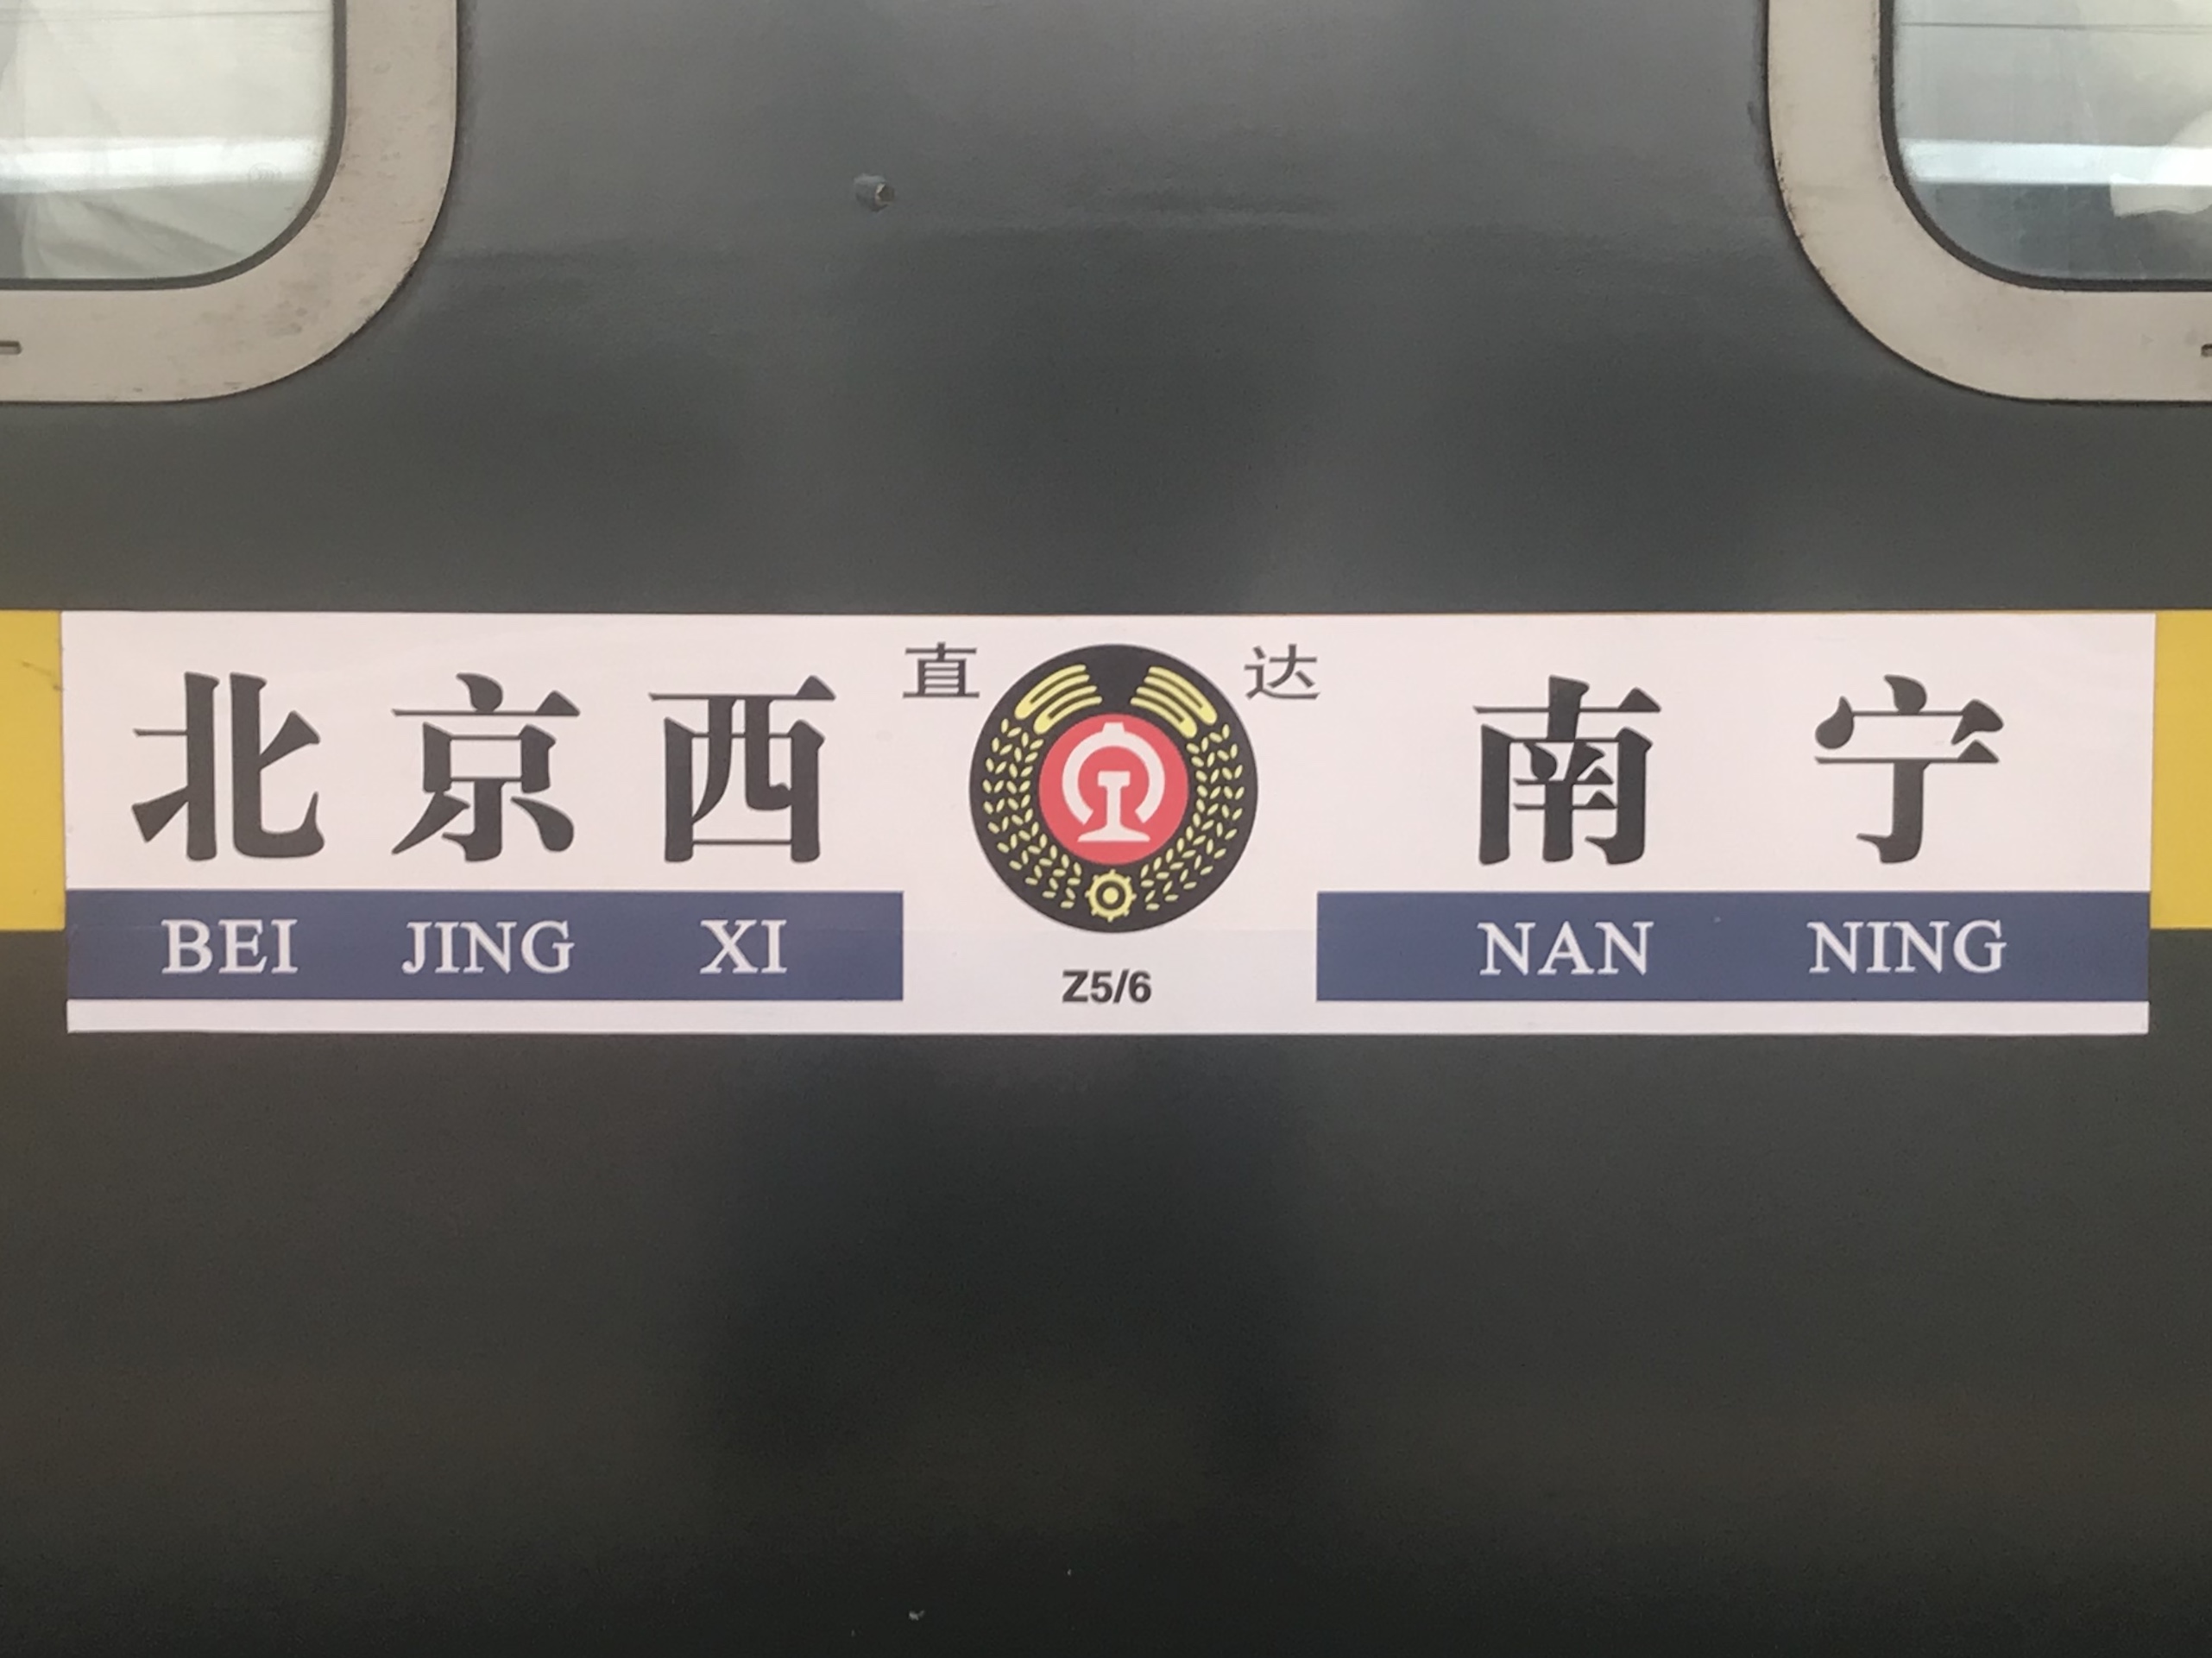 Z5/6次列車其餘車廂的水牌